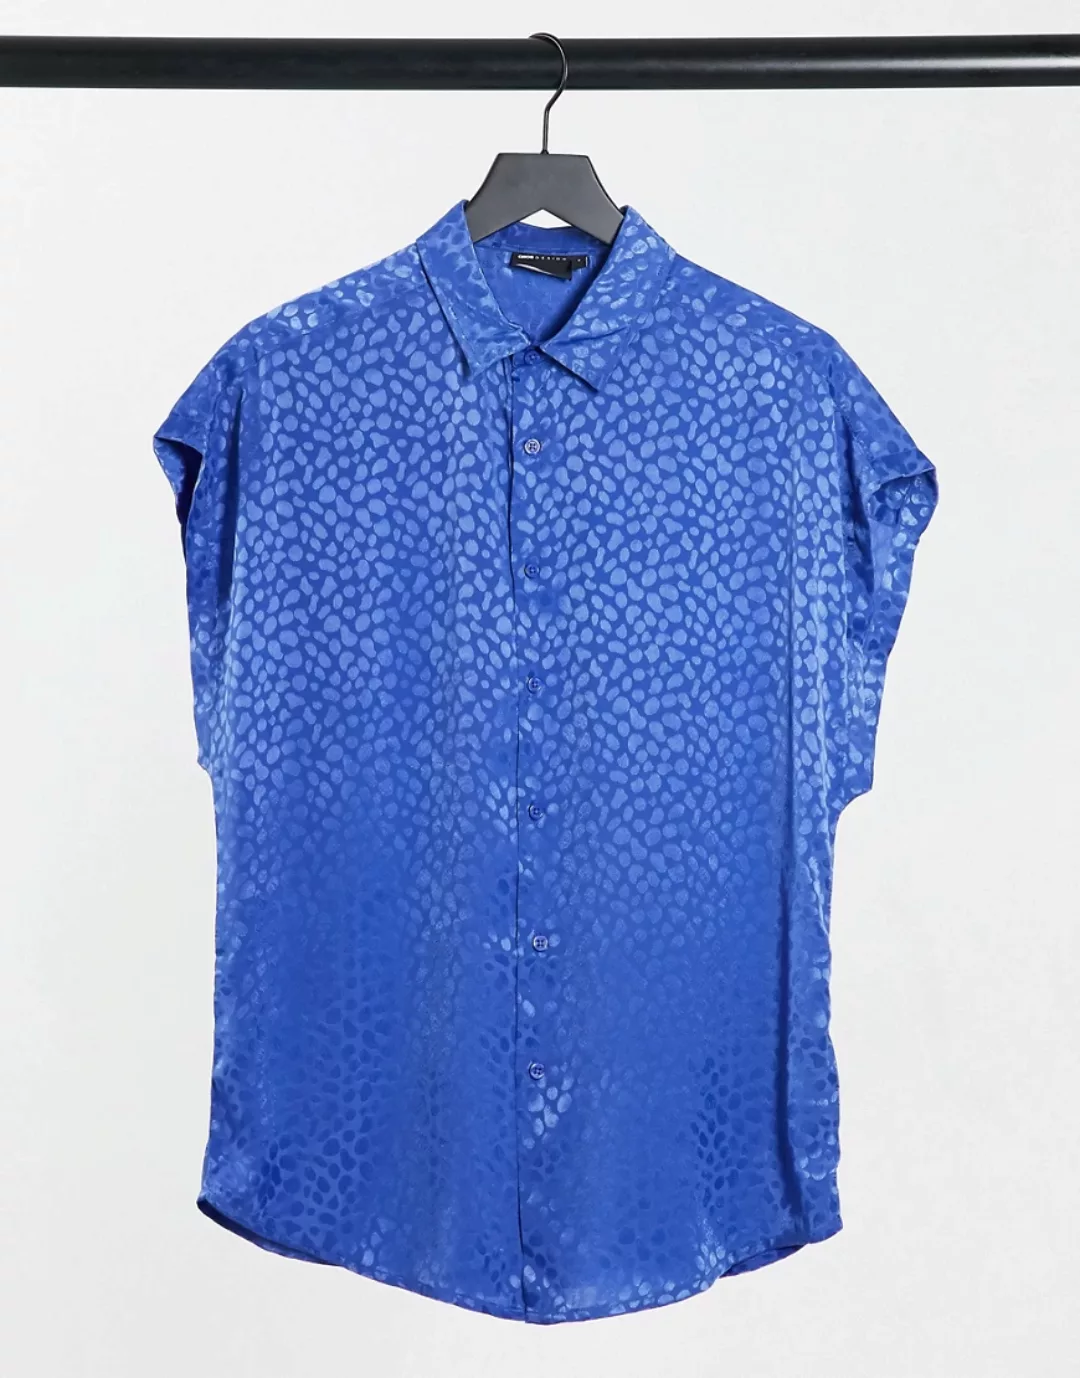 ASOS DESIGN – Bluse mit Flügelärmeln aus Satin-Jacquard in leuchtendem Blau günstig online kaufen